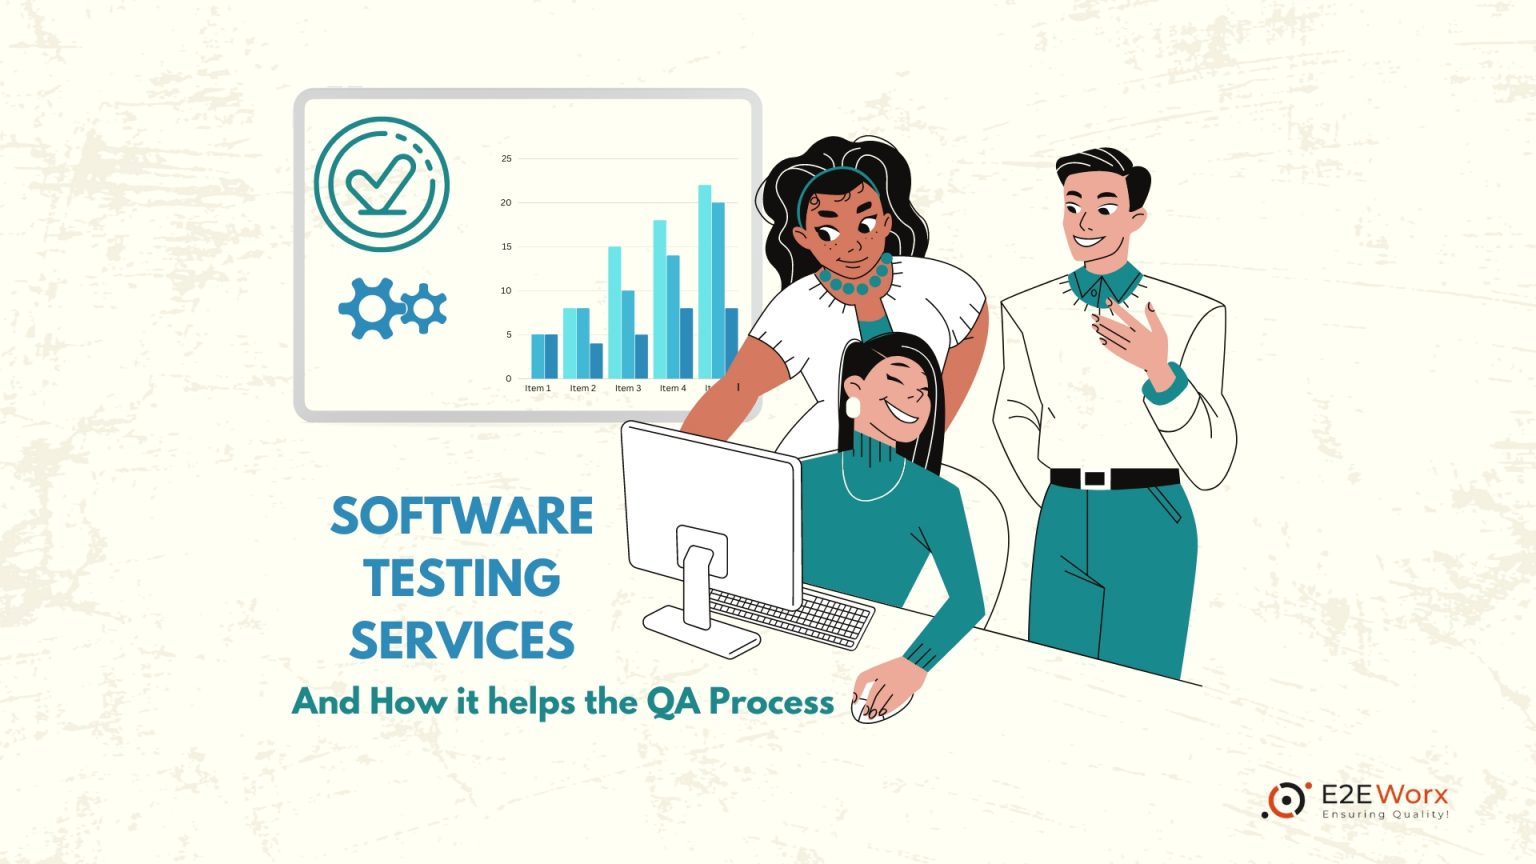 Software Testing Services - E2EWorx ensuring Quality